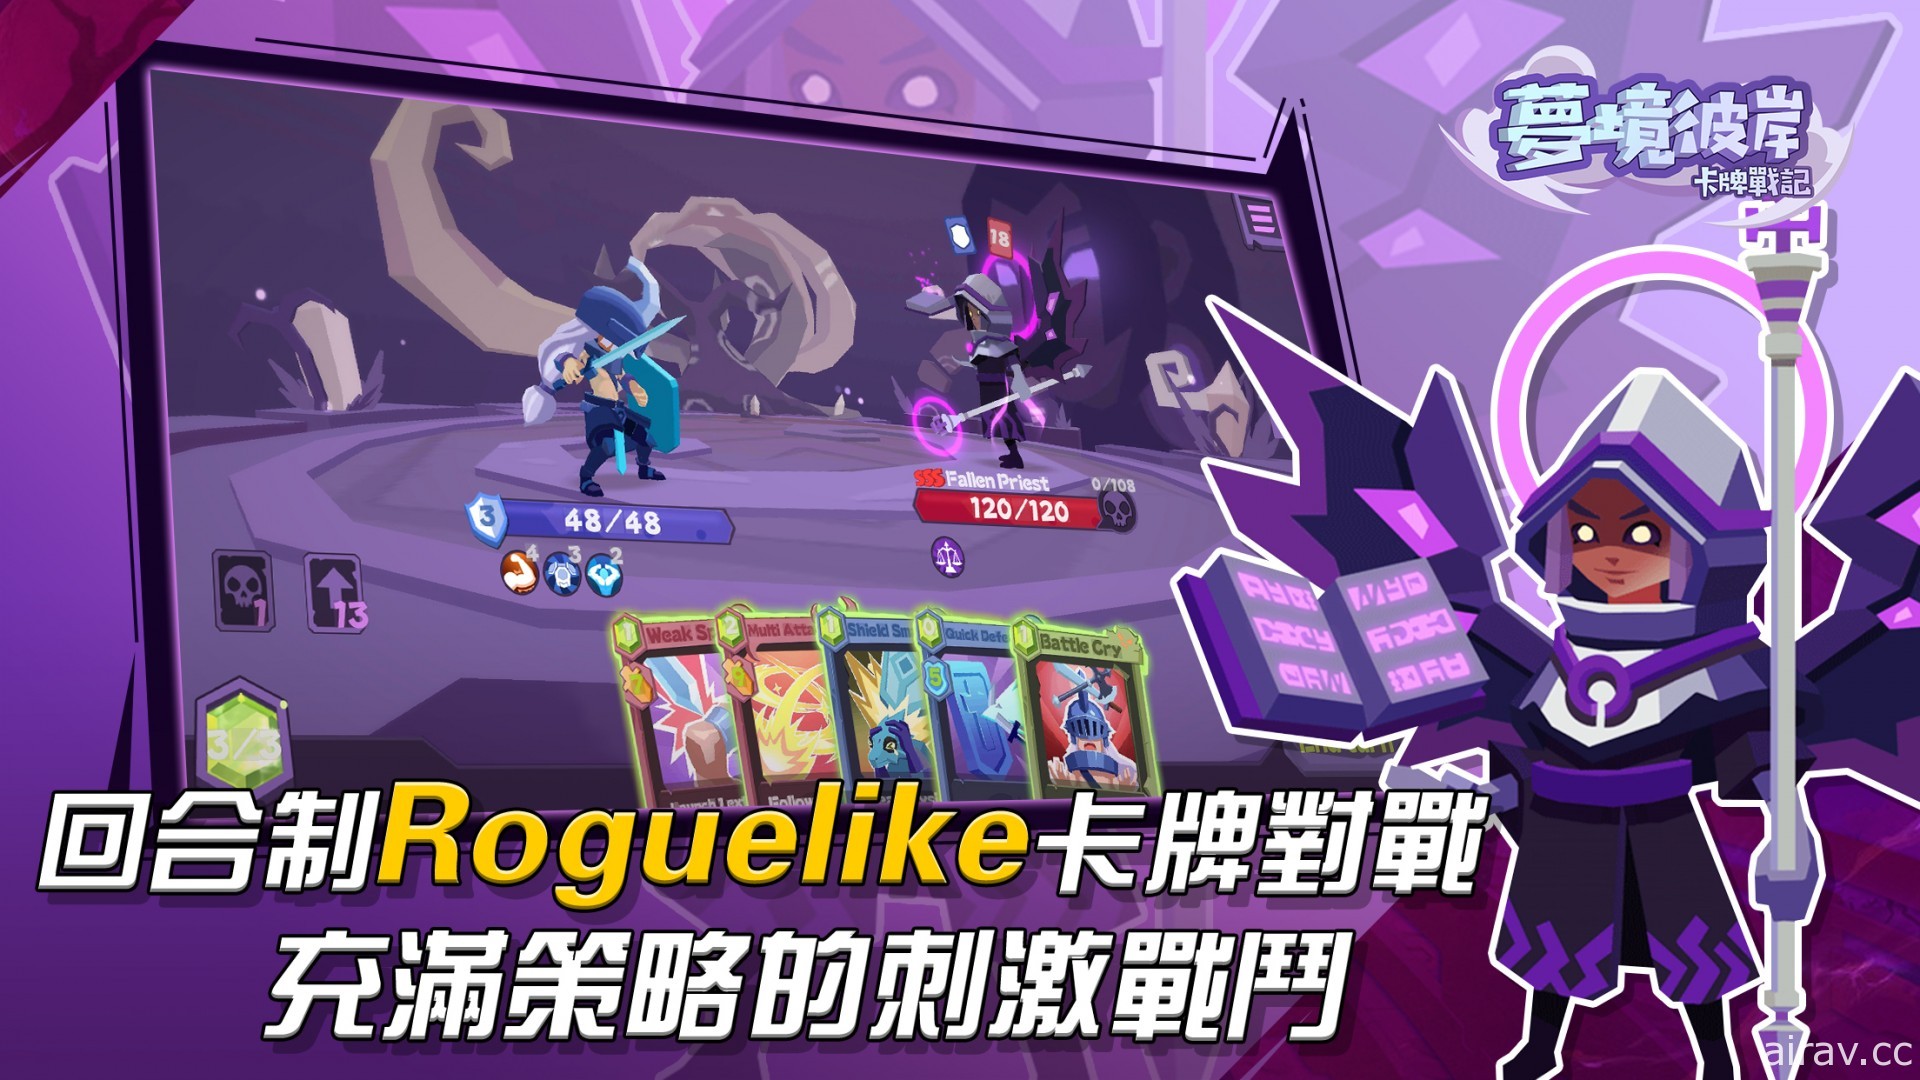 Roguelike 卡牌冒險遊戲《夢境彼岸：卡牌戰記》iOS 版上線 在夢境中挑戰敵人